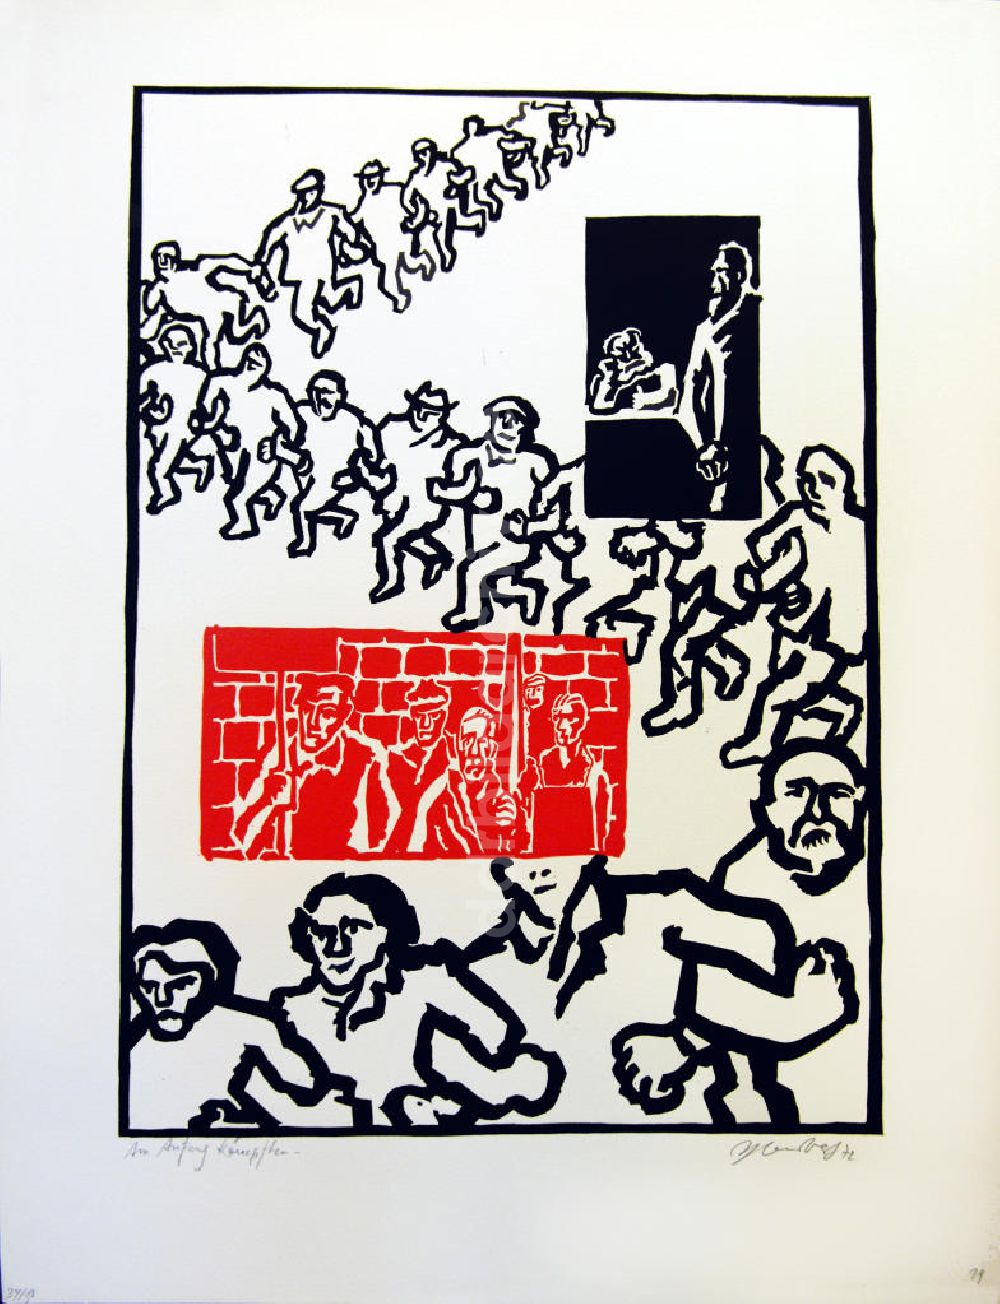 Berlin: Grafik von Herbert Sandberg Motiv 15 aus dem Zyklus Bilder zum Kommunistischen Manifest aus dem Jahr 1972